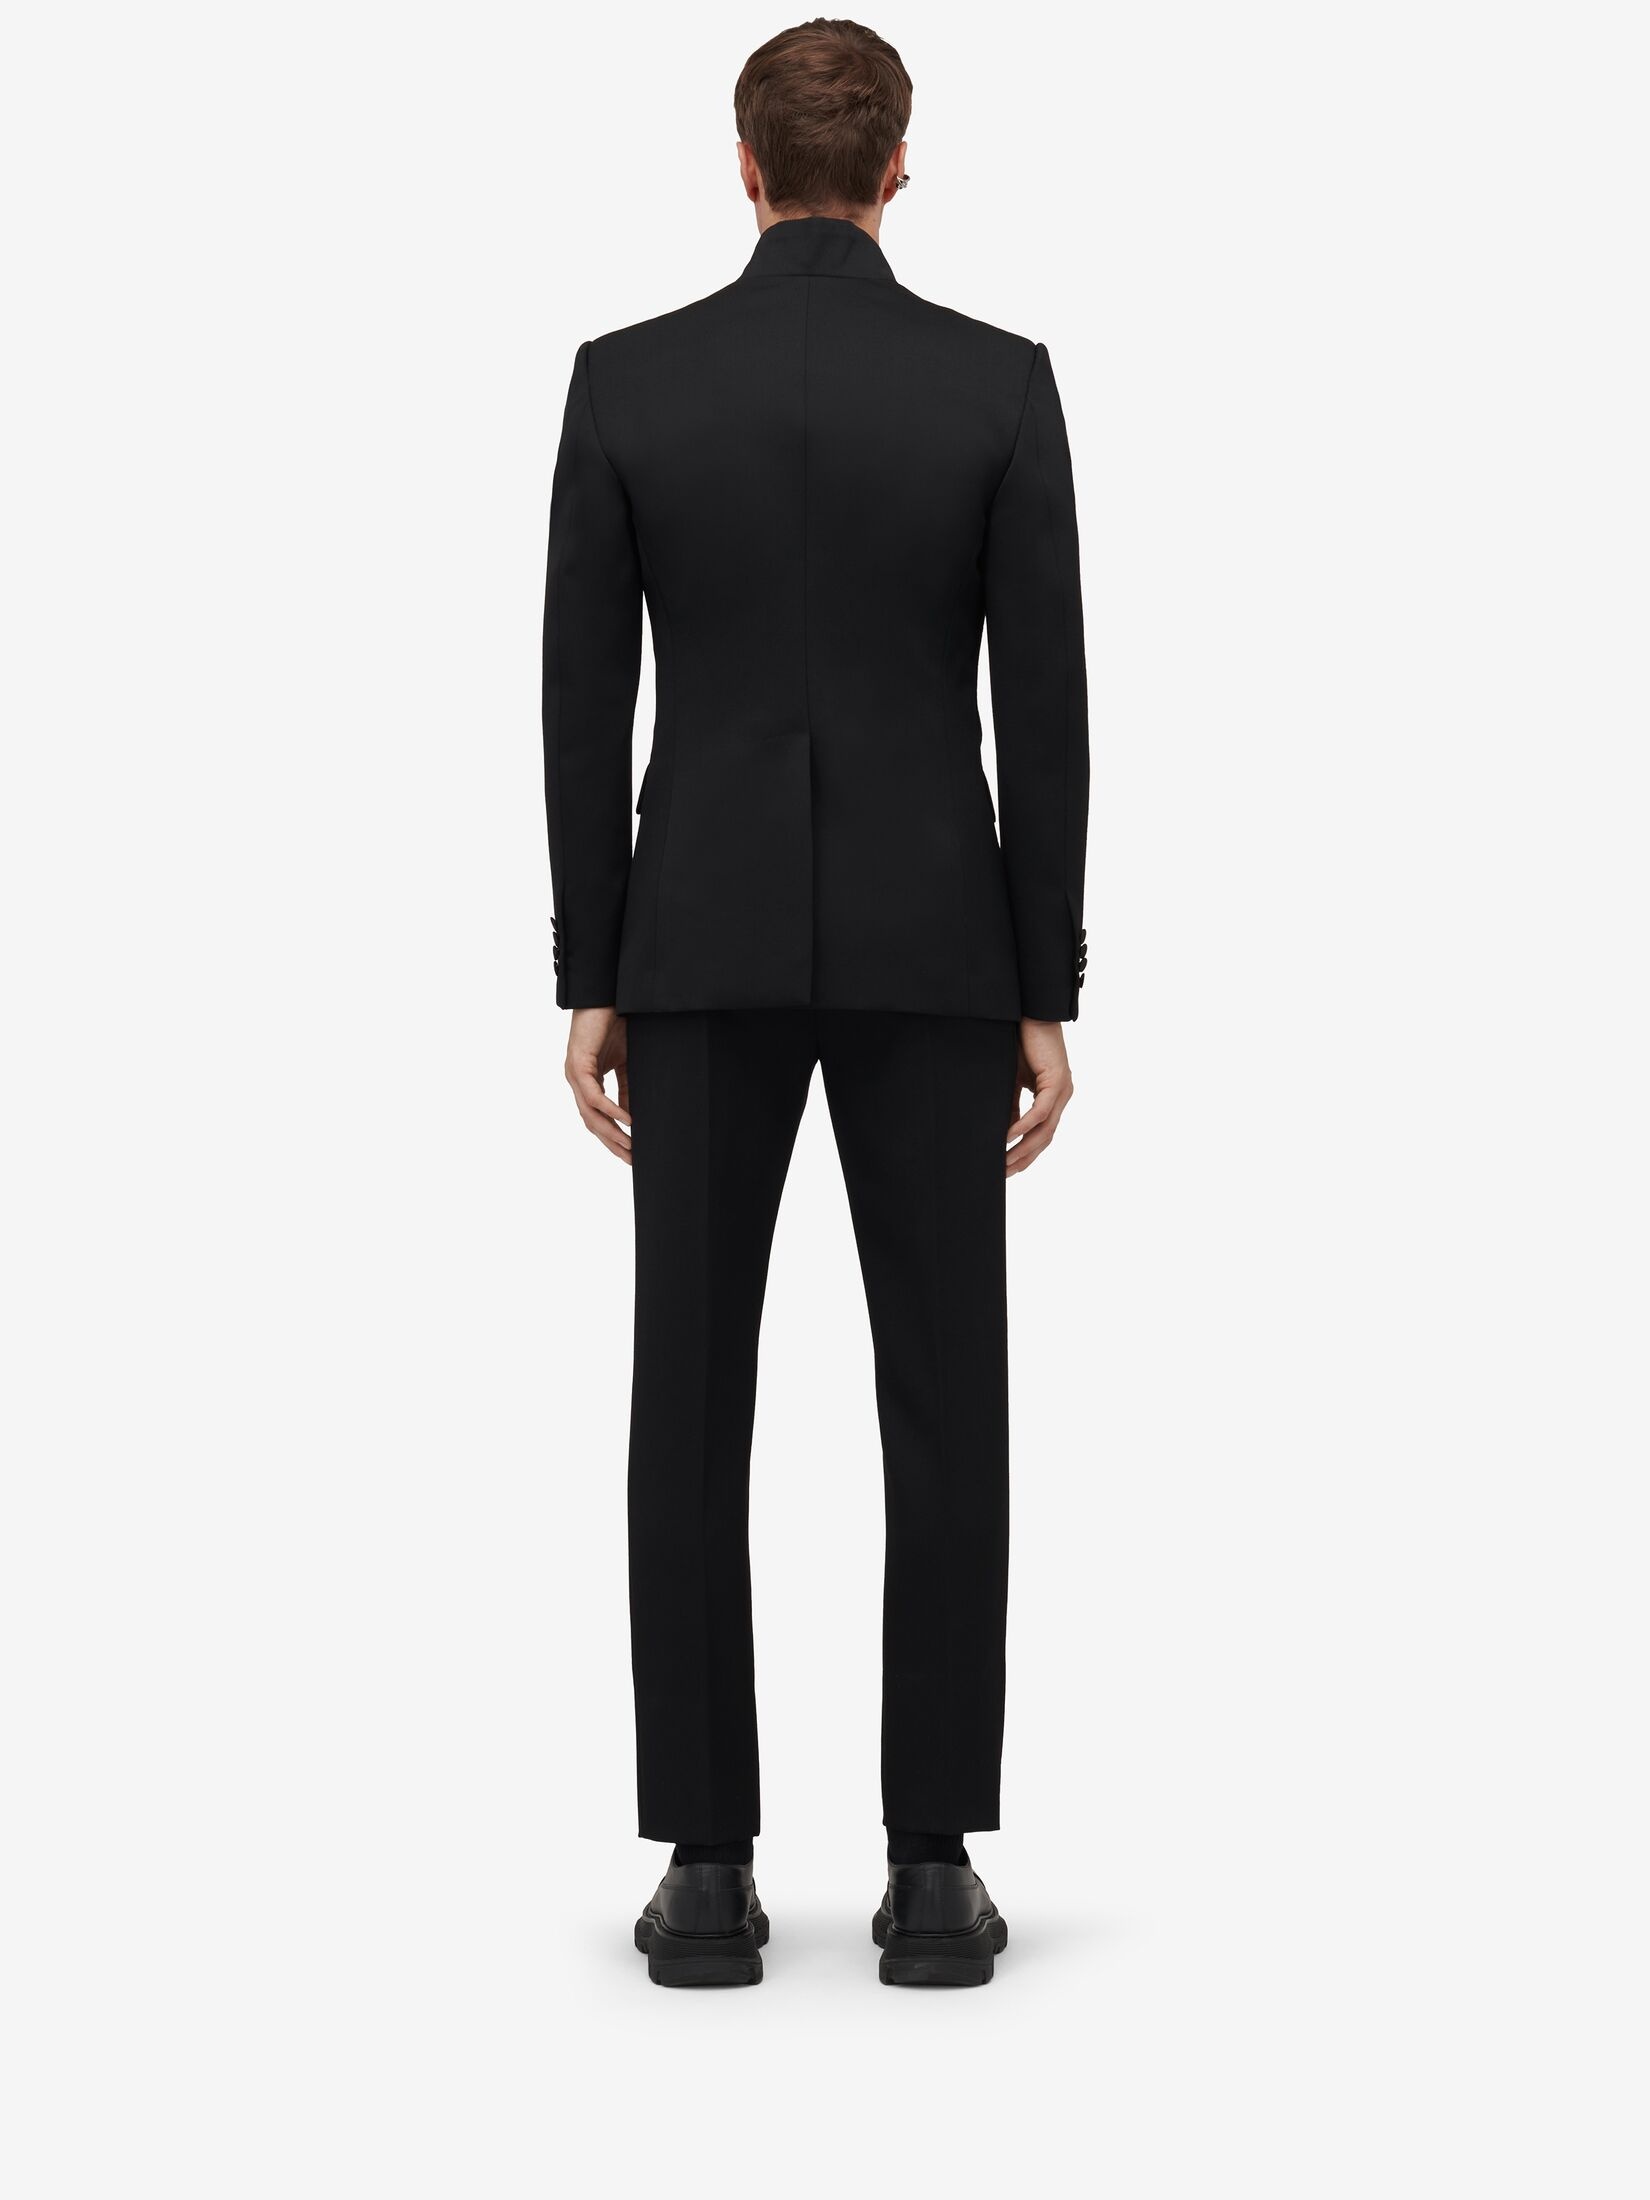 Men's Twisted Lapel Tuxedo Jacket in Black - 4